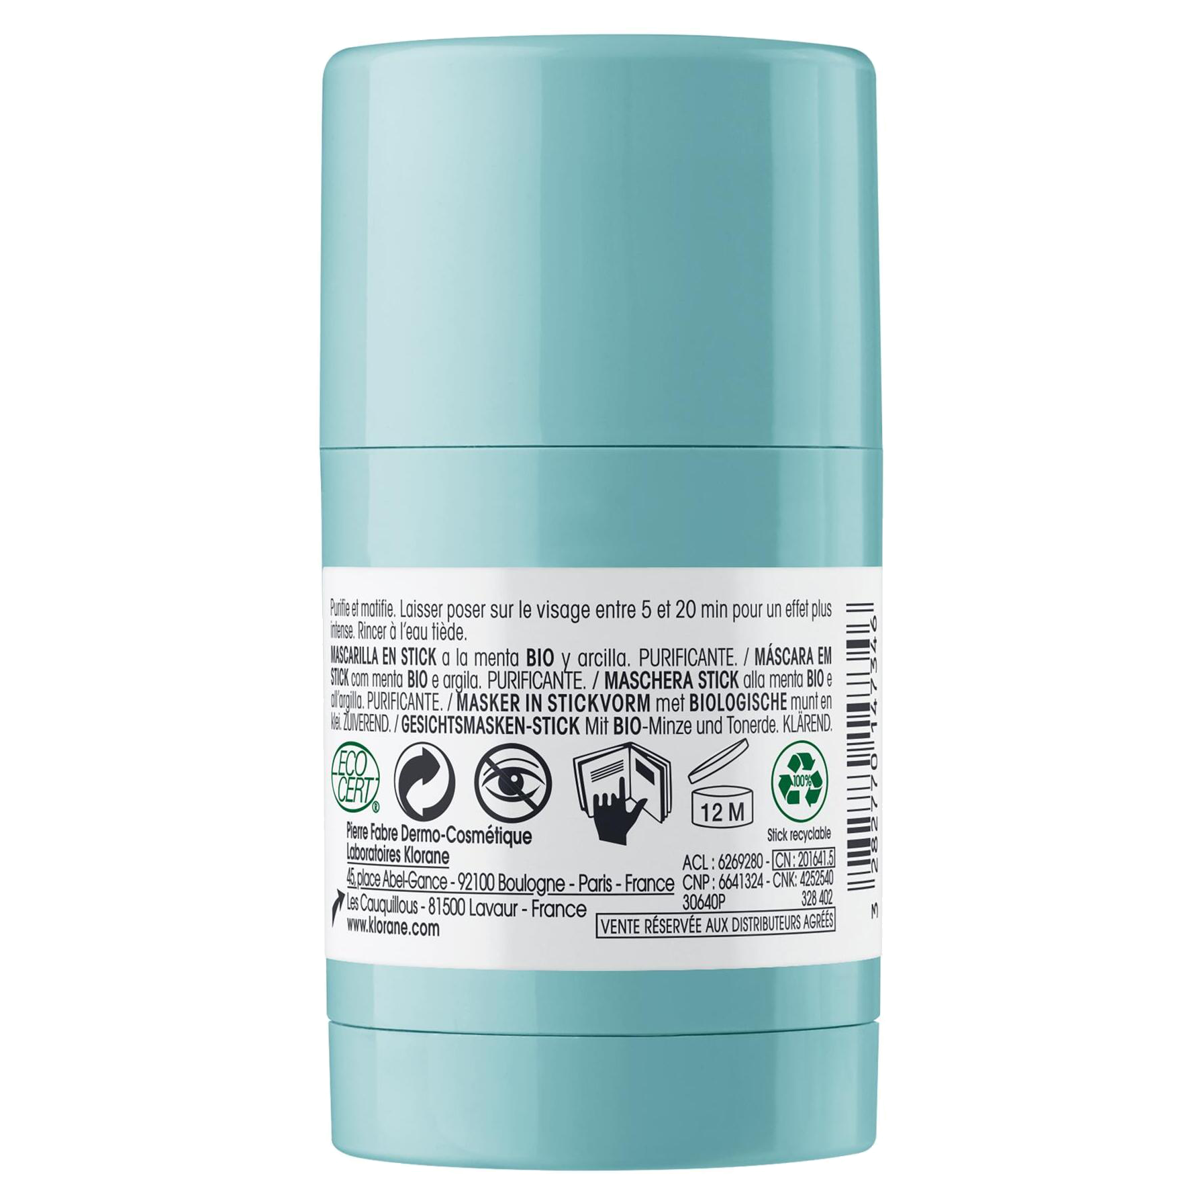 Klorane Wasserminze Bio Stick Gesichtsmaske 25 ml